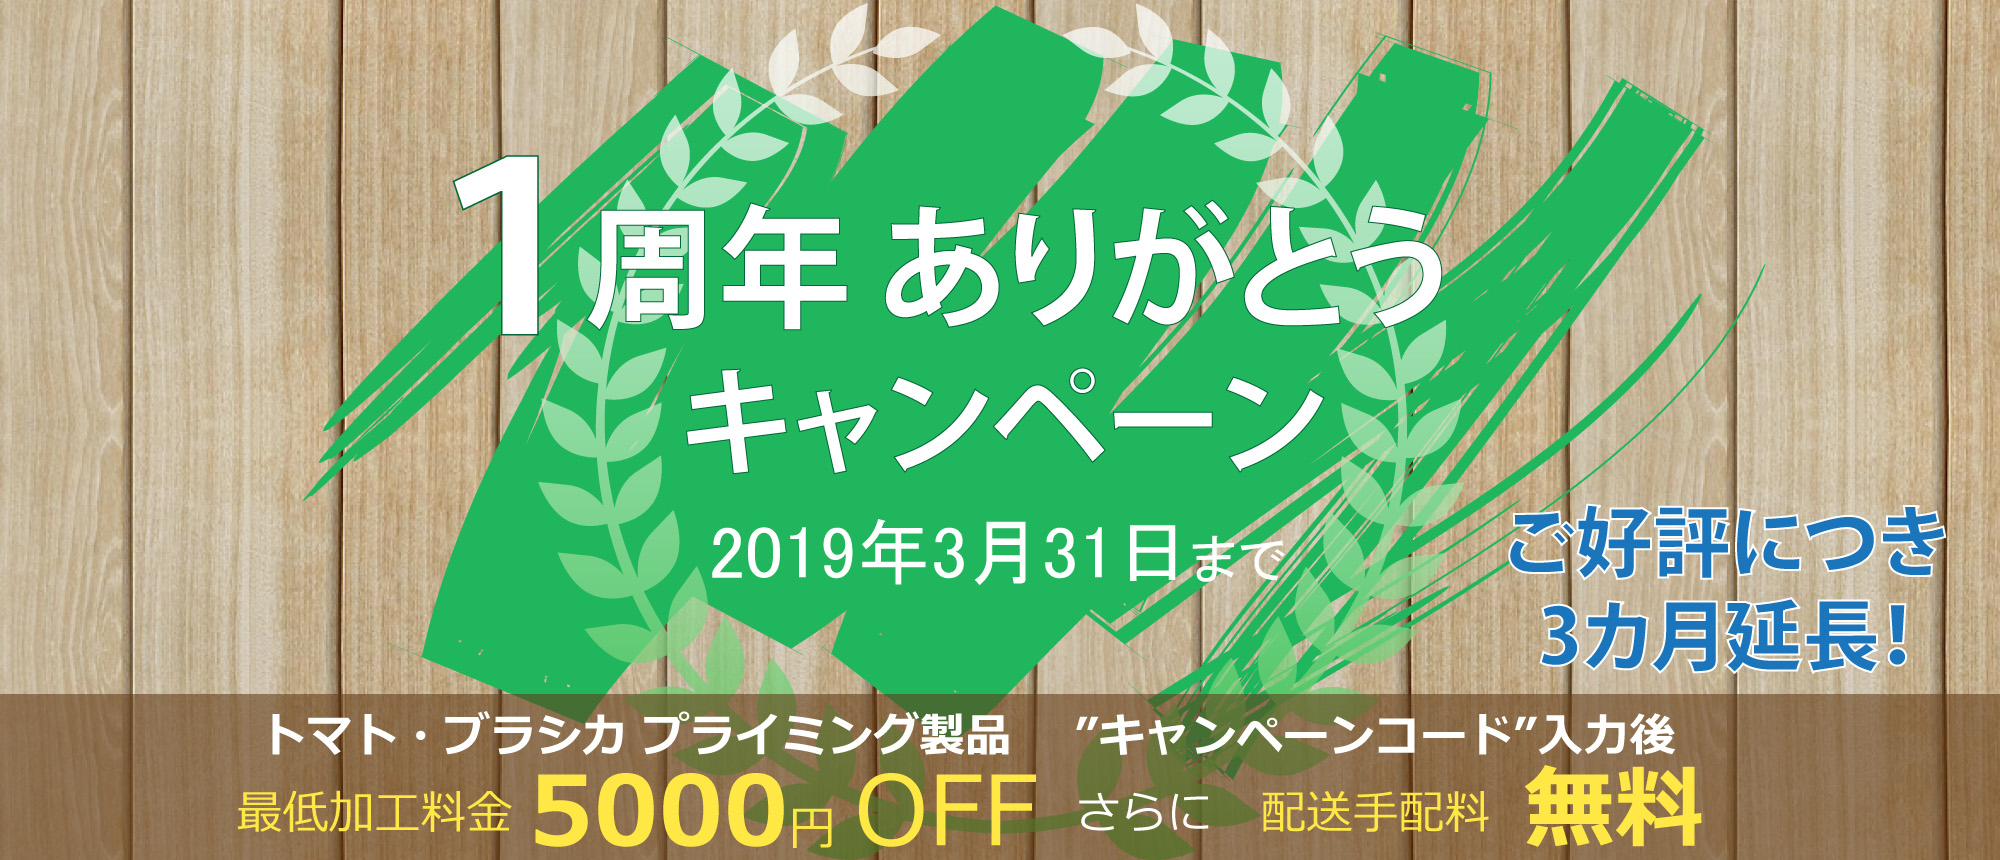 日本シードテクノ創業キャンペーン